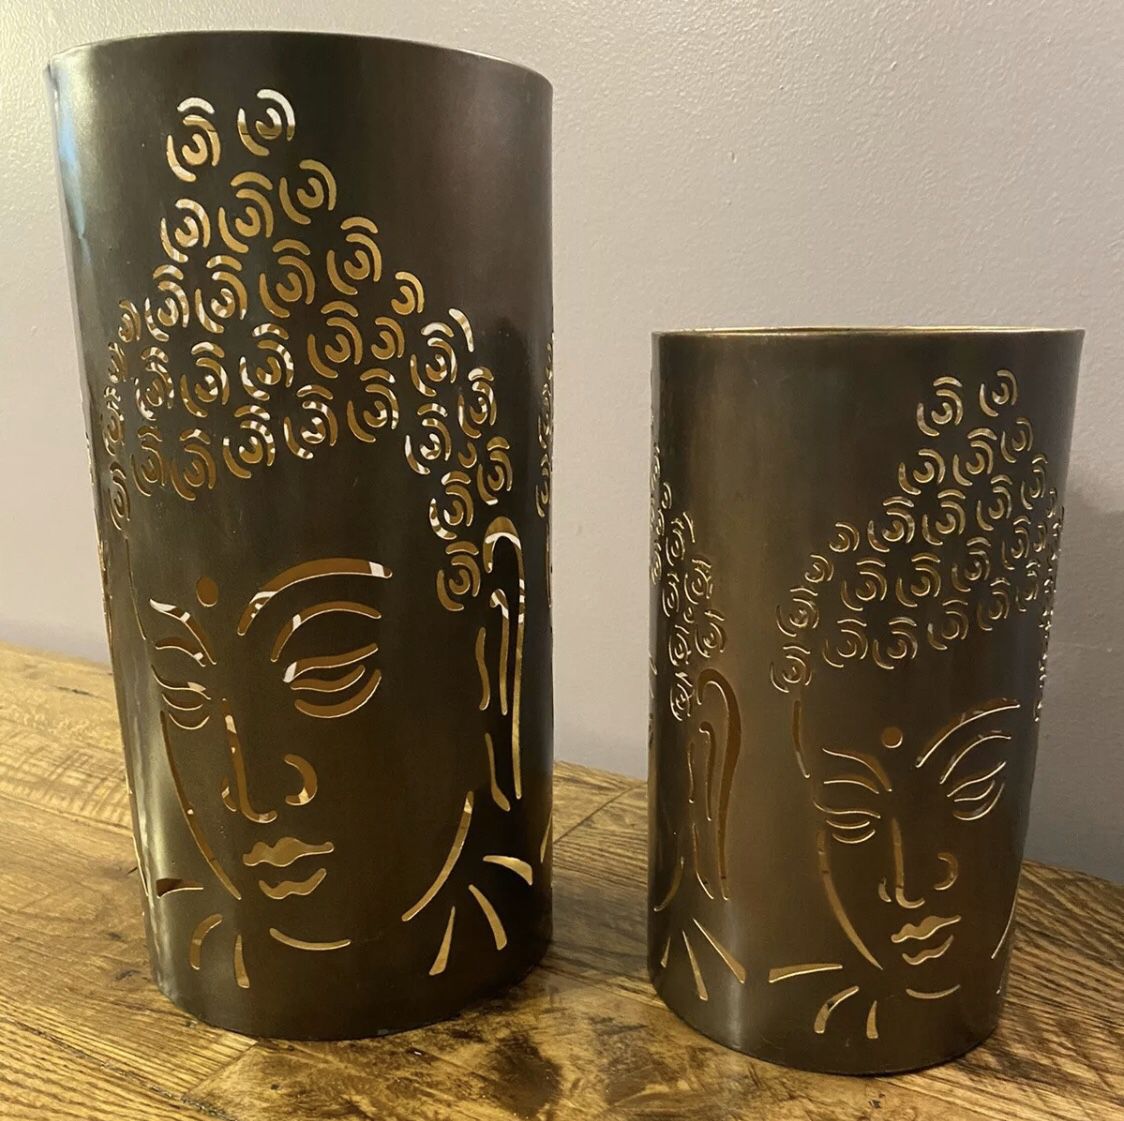 Buddha Mantle Candle Holder Candle/Flameless Cylinder Decorative Holder